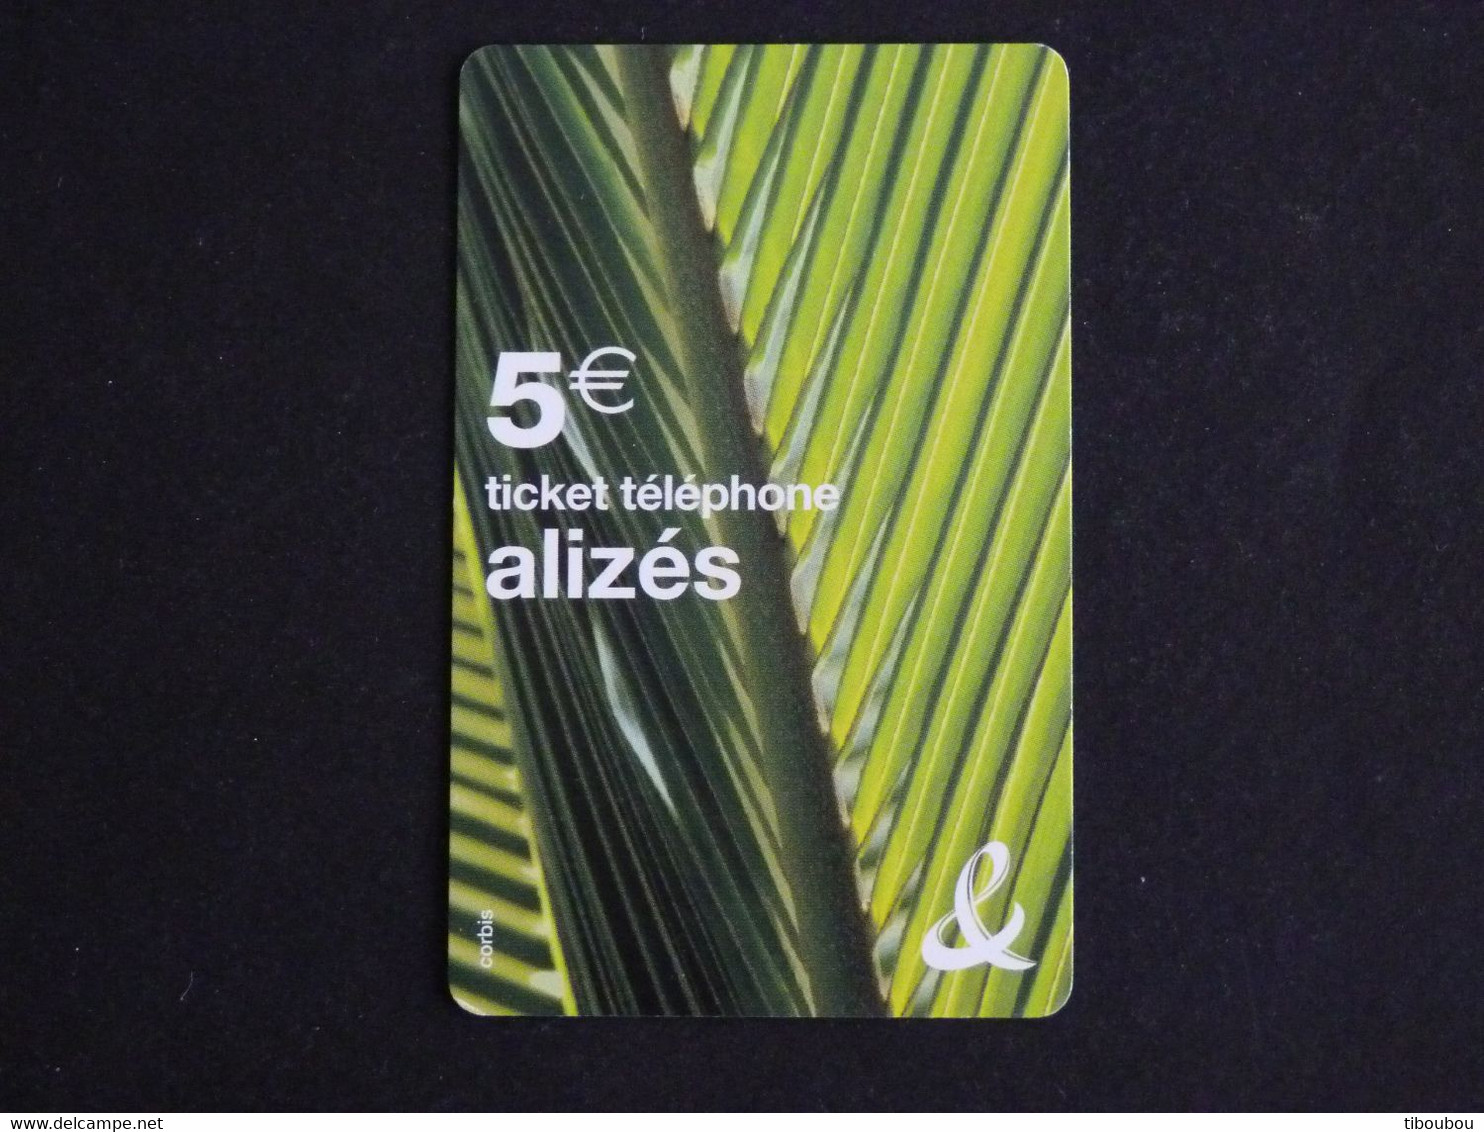 TELECARTE TICKET TELEPHONE ALIZES 5 EUROS FRANCE TELECOM - FT Tickets